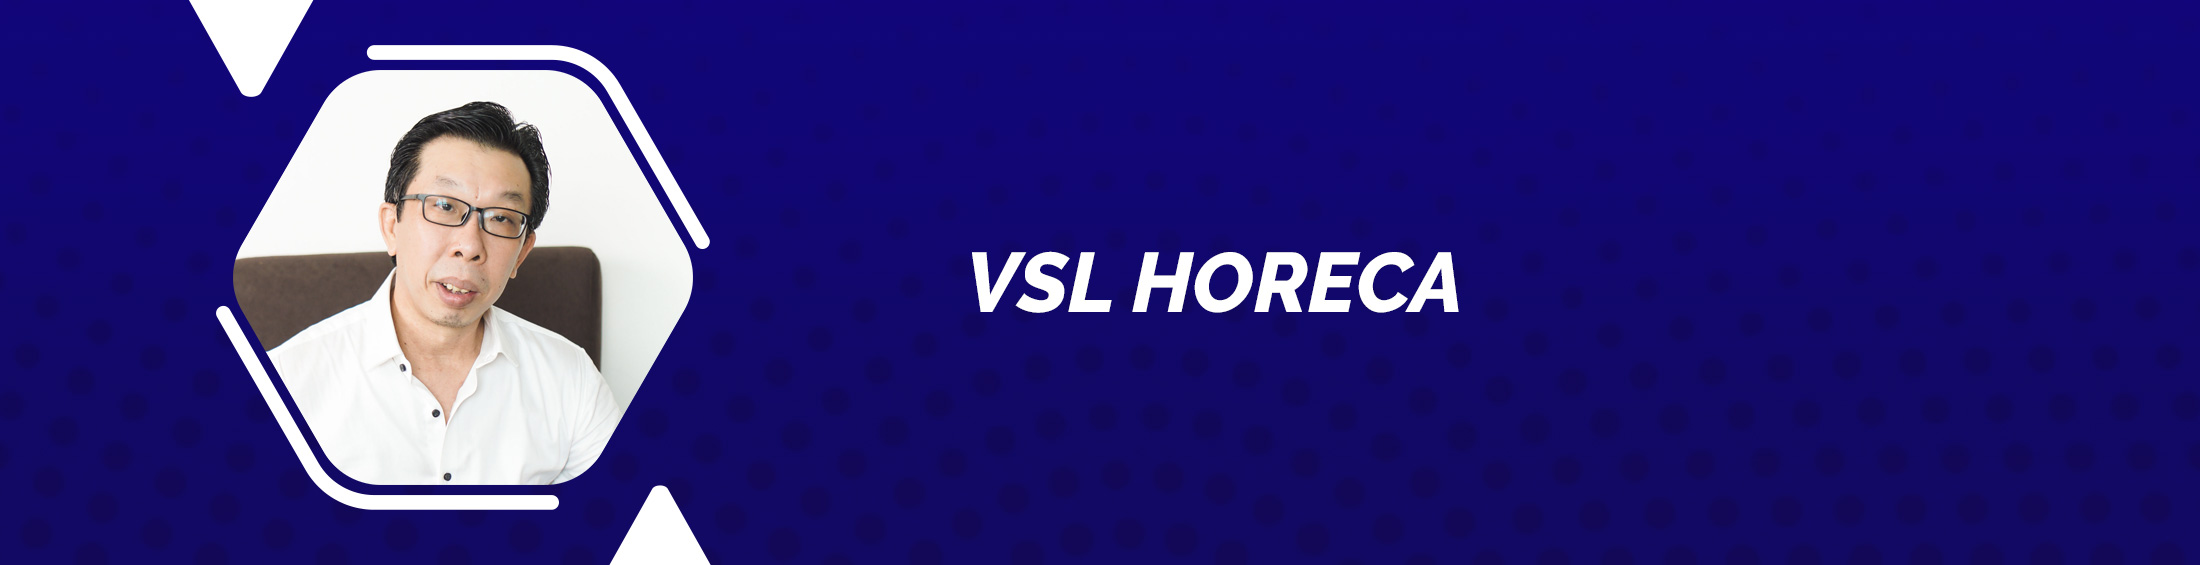 VSL_HORecA